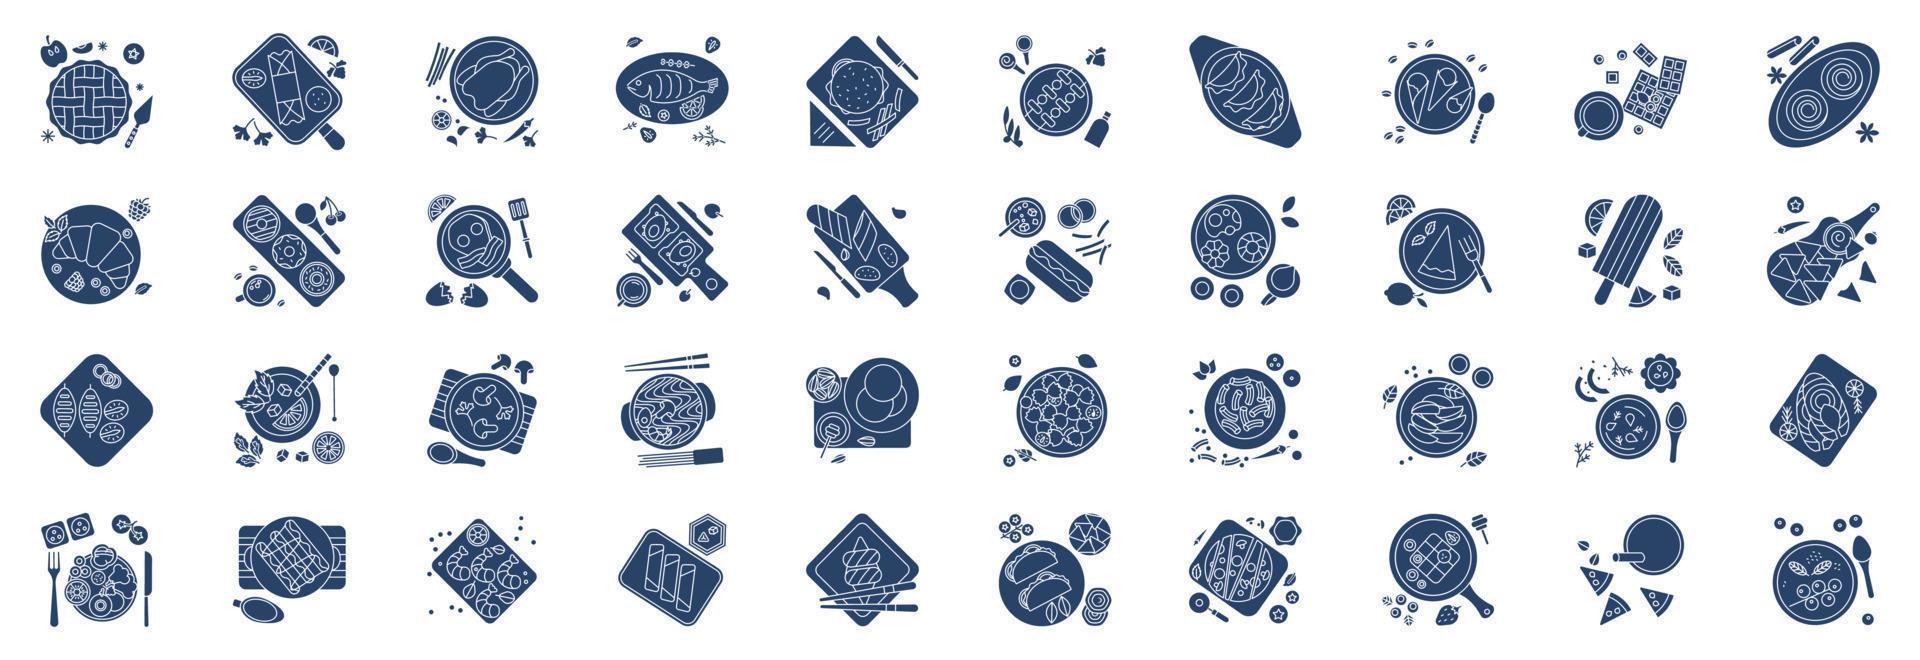 coleção de ícones relacionados a pratos e jantares finos, incluindo ícones como torta de maçã, chinês, mojito e muito mais. ilustrações vetoriais, conjunto perfeito de pixels vetor